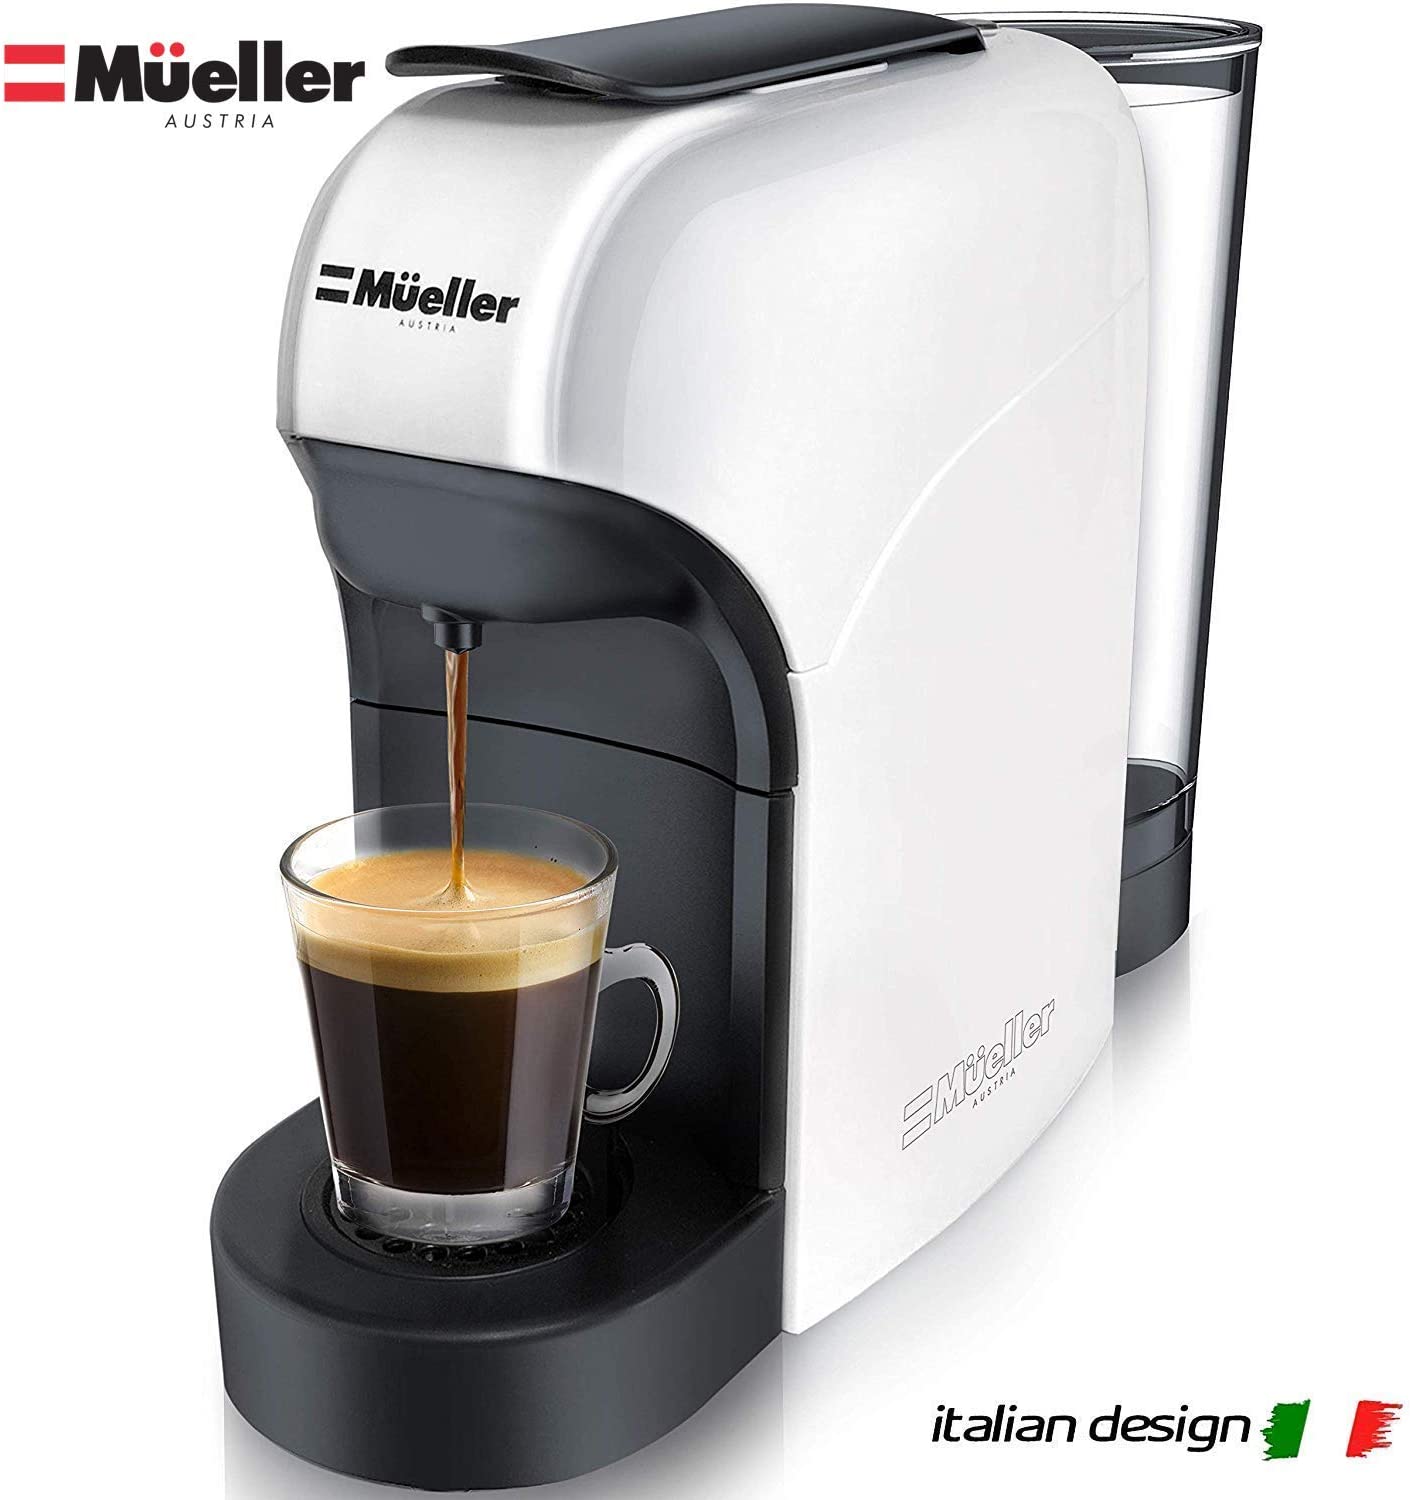 Mueller Espresso Machine